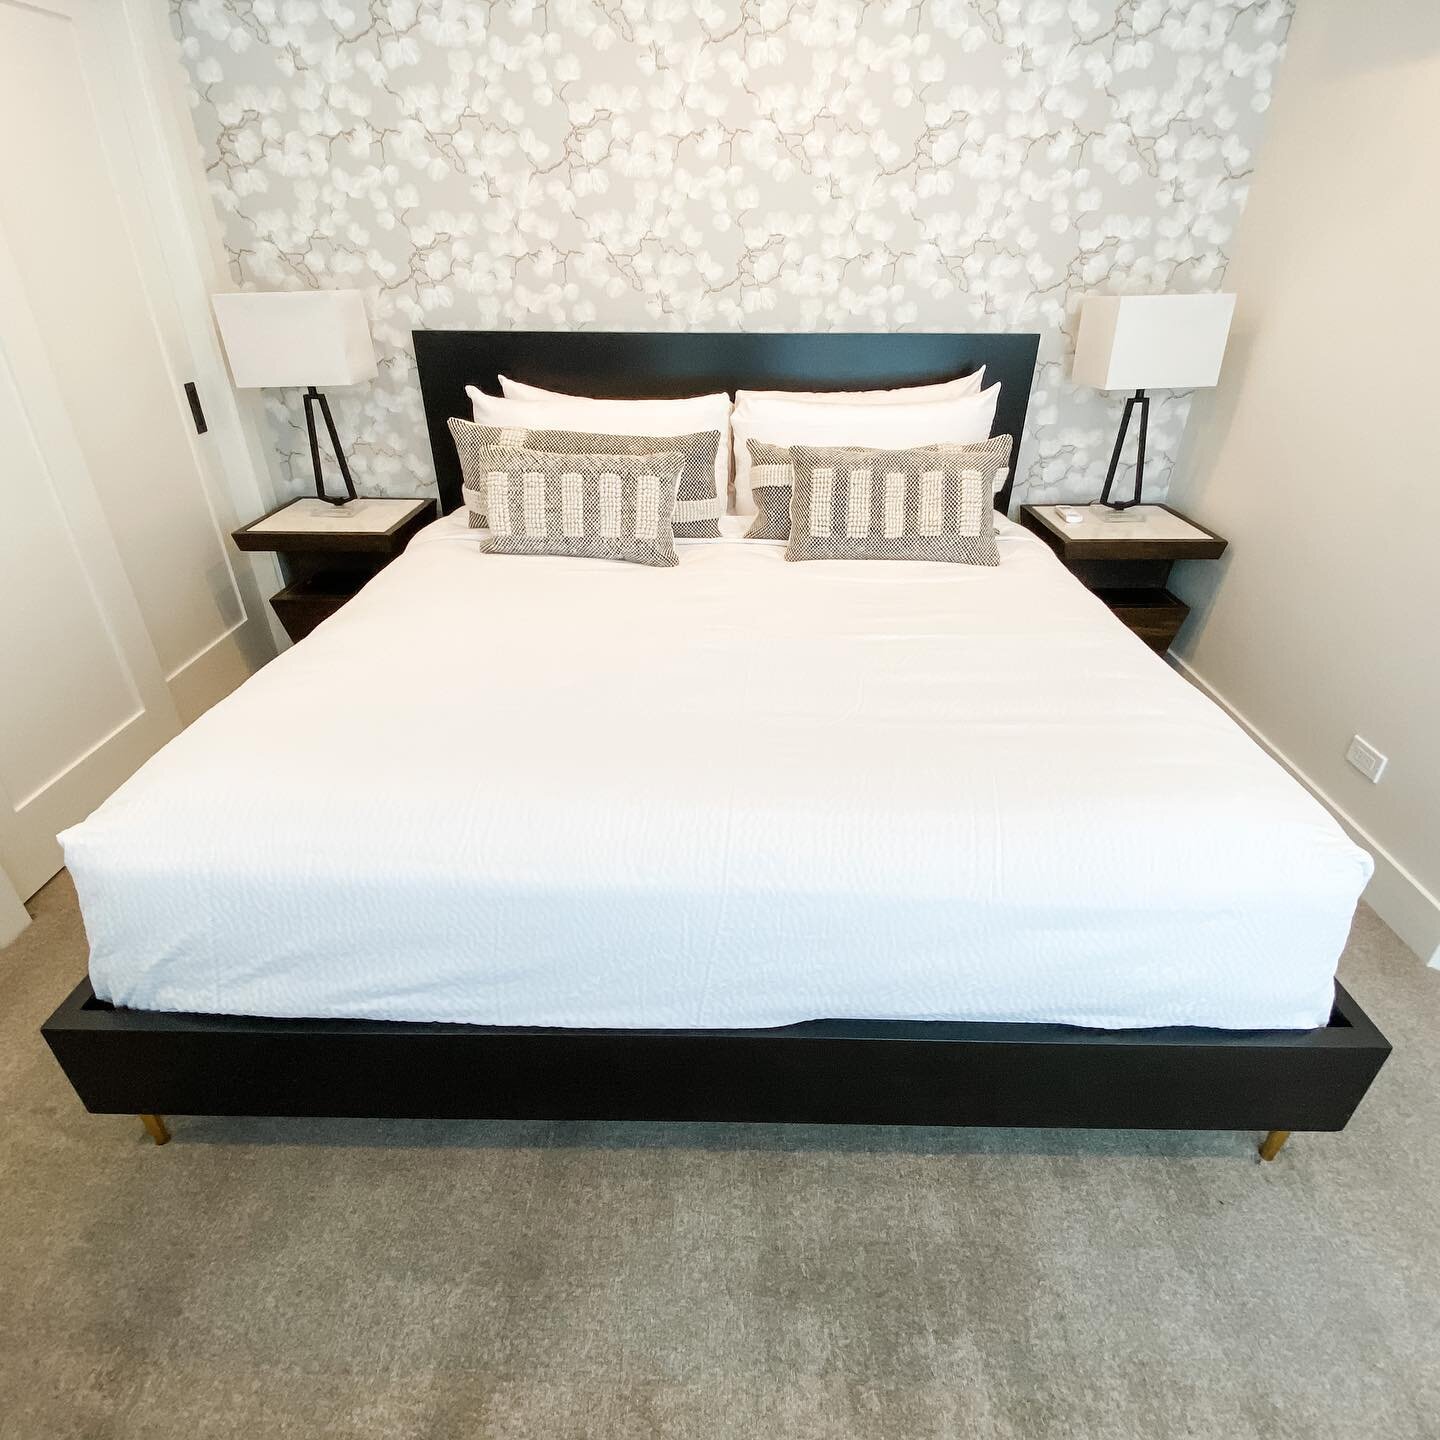 Loving this zen inspired  bedroom suite #inspirationmonday #vailinteriordesign #newyearnewprojects⭐️